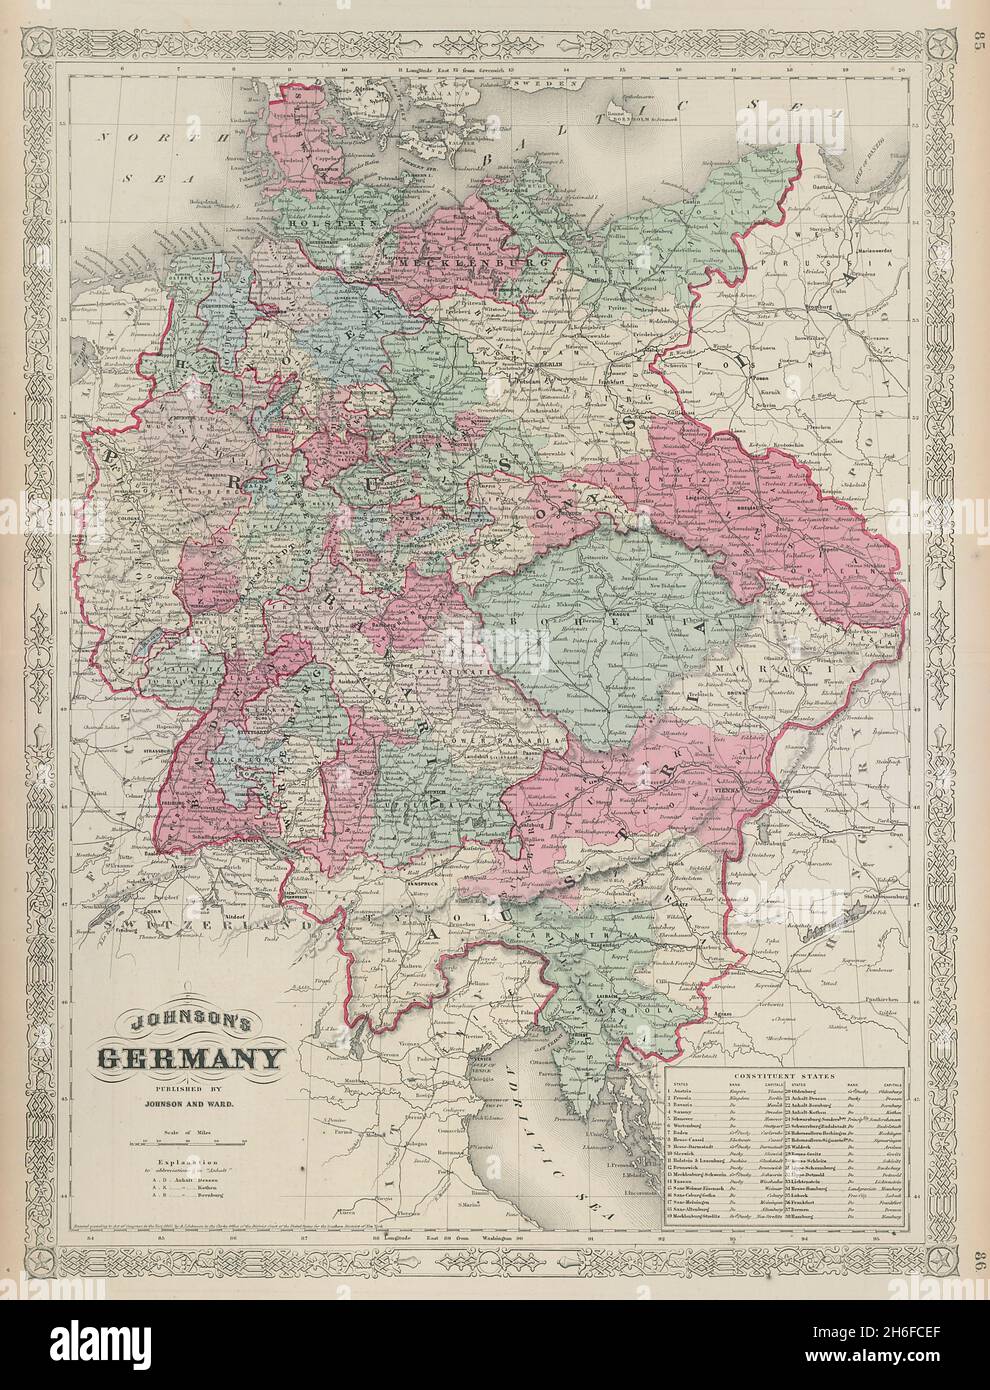 Johnsons Deutschland. Preußen Österreich Böhmen Mähren Tschechien Tirol 1865 Karte Stockfoto